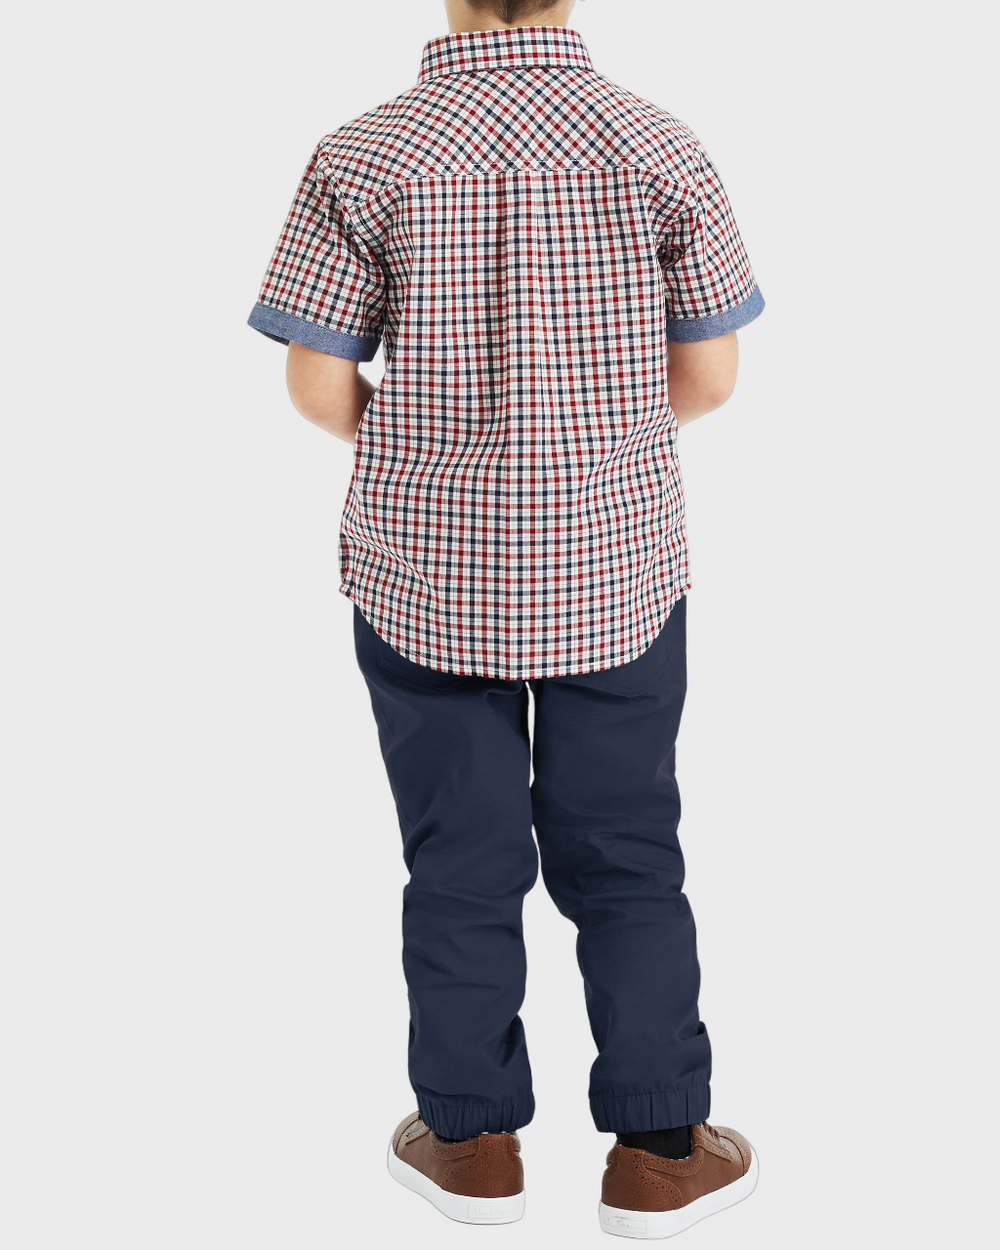 Boys Button-Down Shirt & Pant Set (Sizes 4-7)